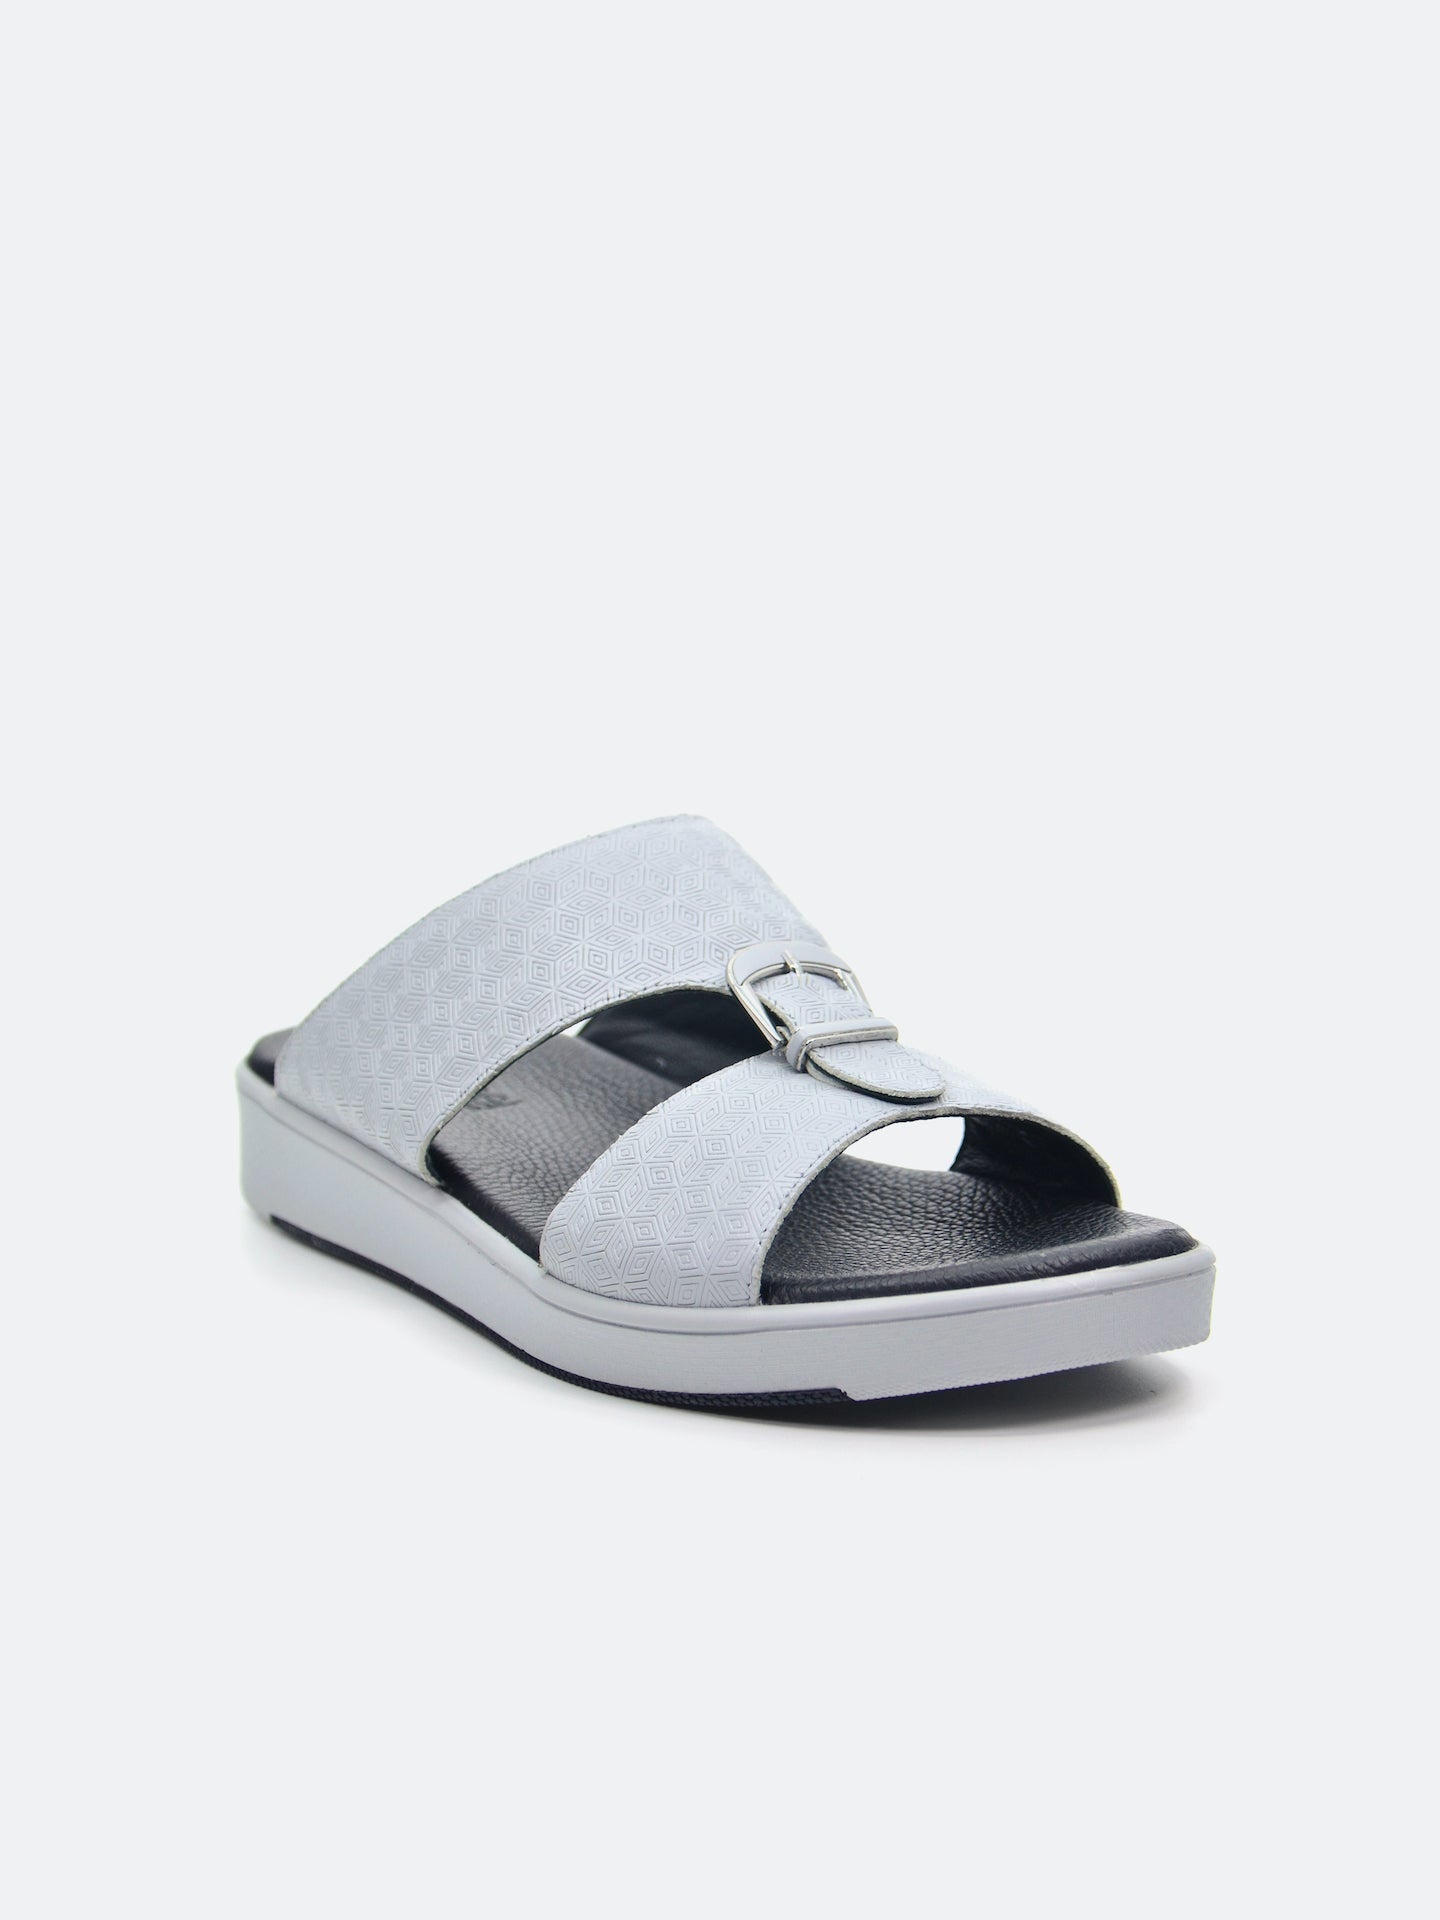 Barjeel Uno SP1-017 Men's Arabic Sandals #color_Grey